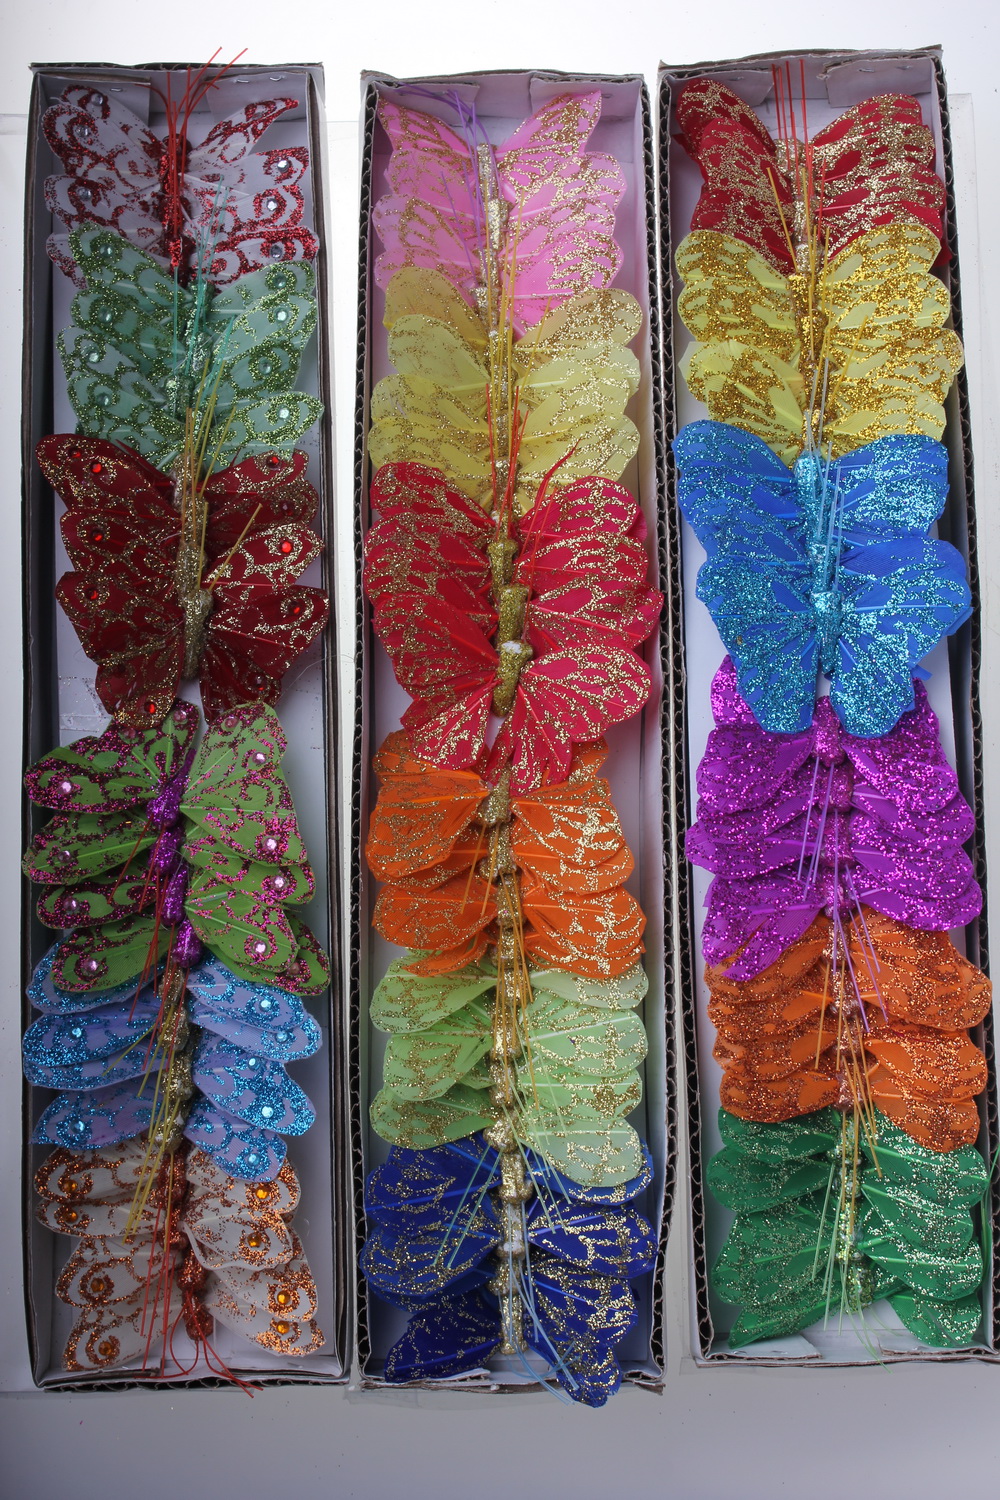 бабочки, шмели, пчёлы декоративная искусственная флористическая - бабочка на стикере  5 см   (24 шт.) 1104